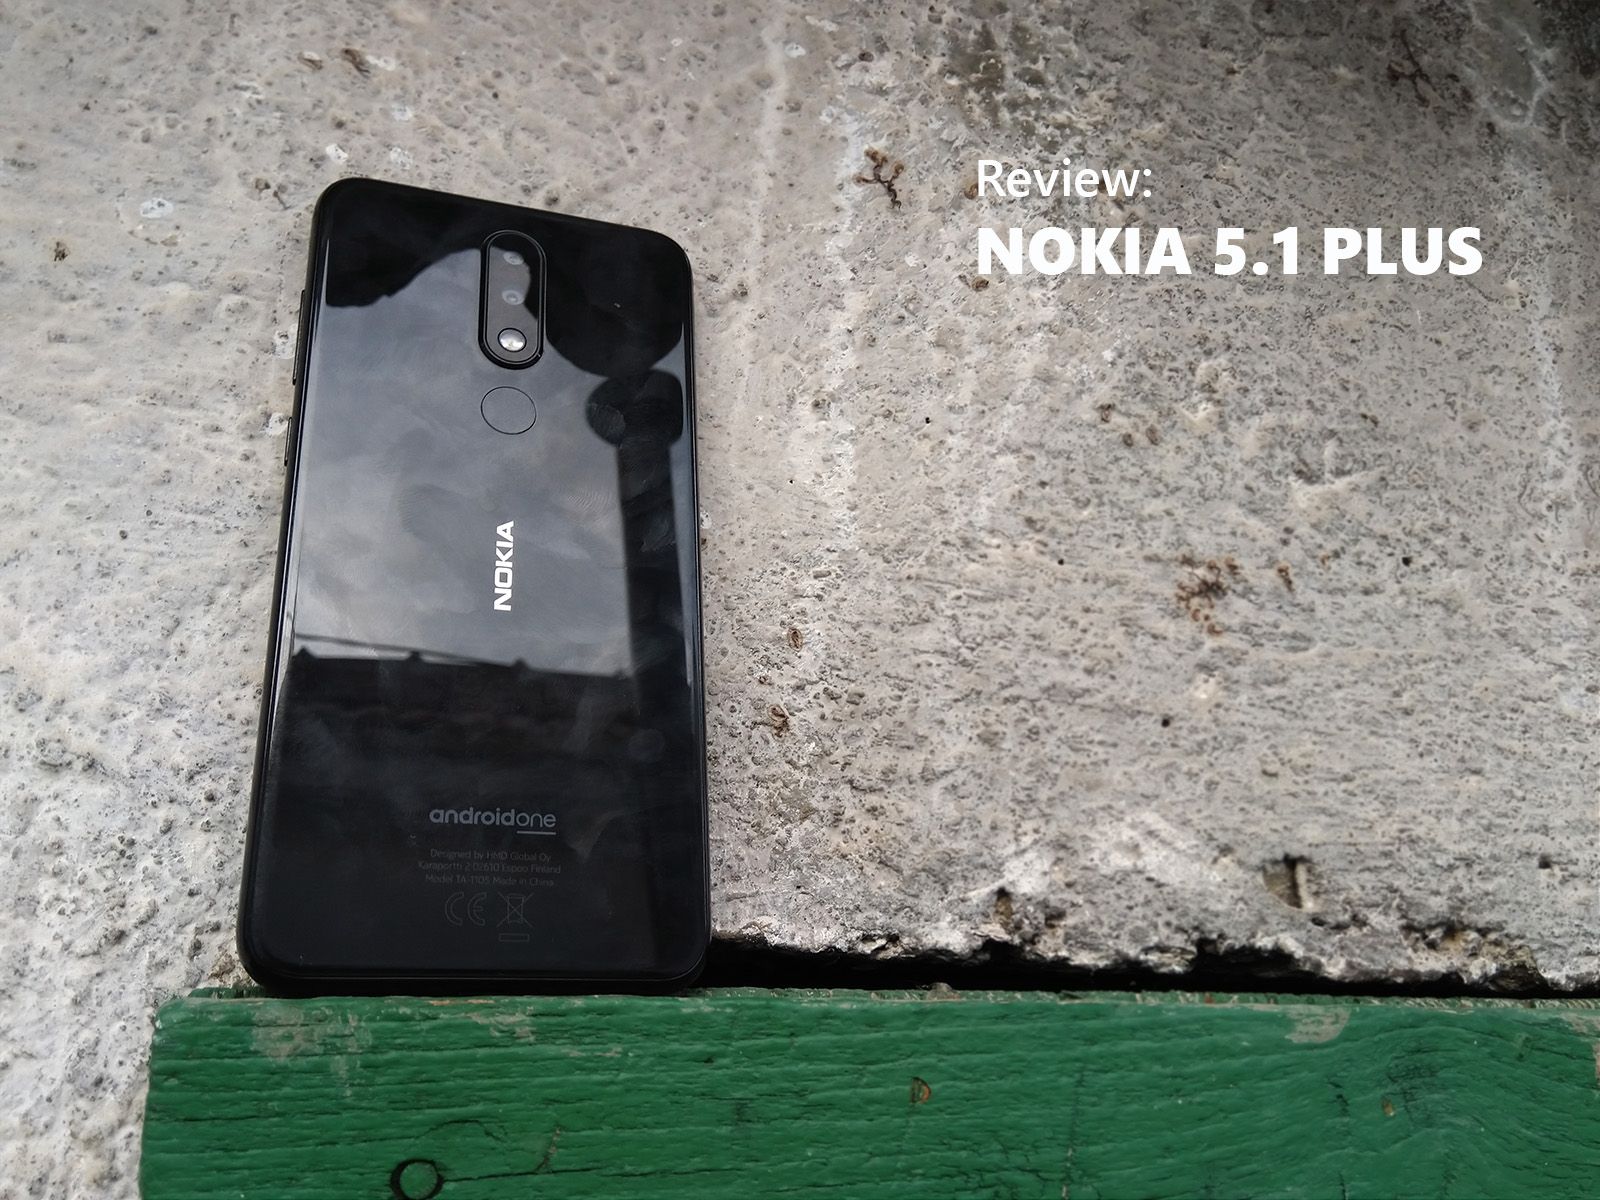 Review: Nokia 5.1 Plus